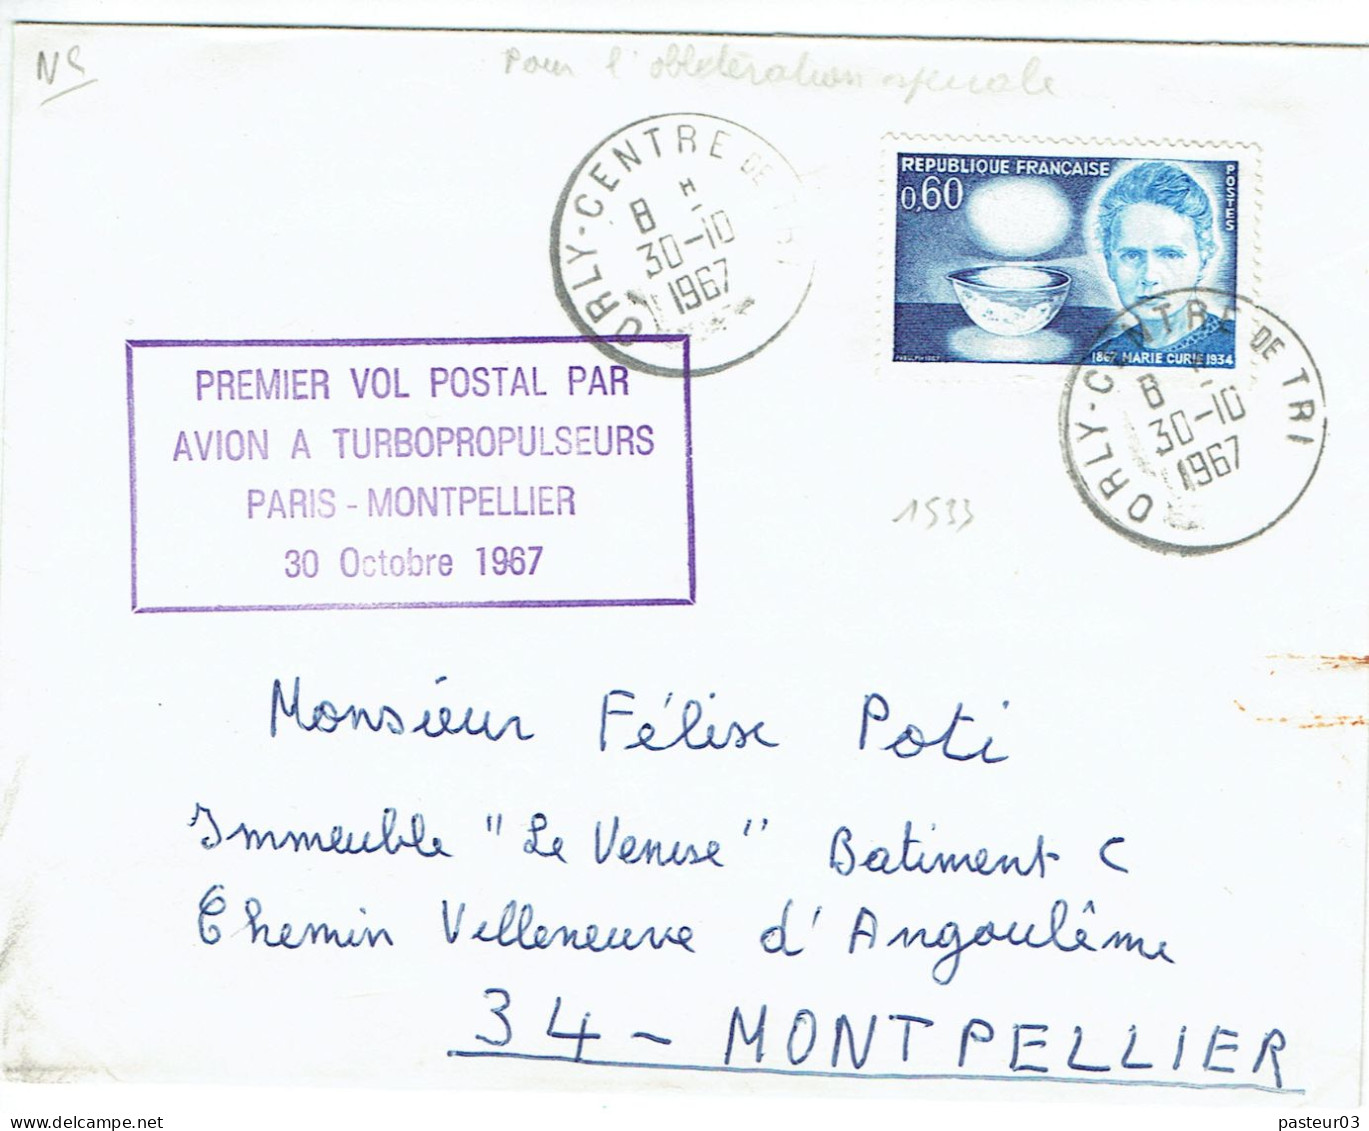 Premier Vol Postal Par Avion à Turbopropulseurs Paris Montpellier 30 Octobre 1967 Timbre N° 1533 De France TaD Orly Cent - 1960-.... Cartas & Documentos